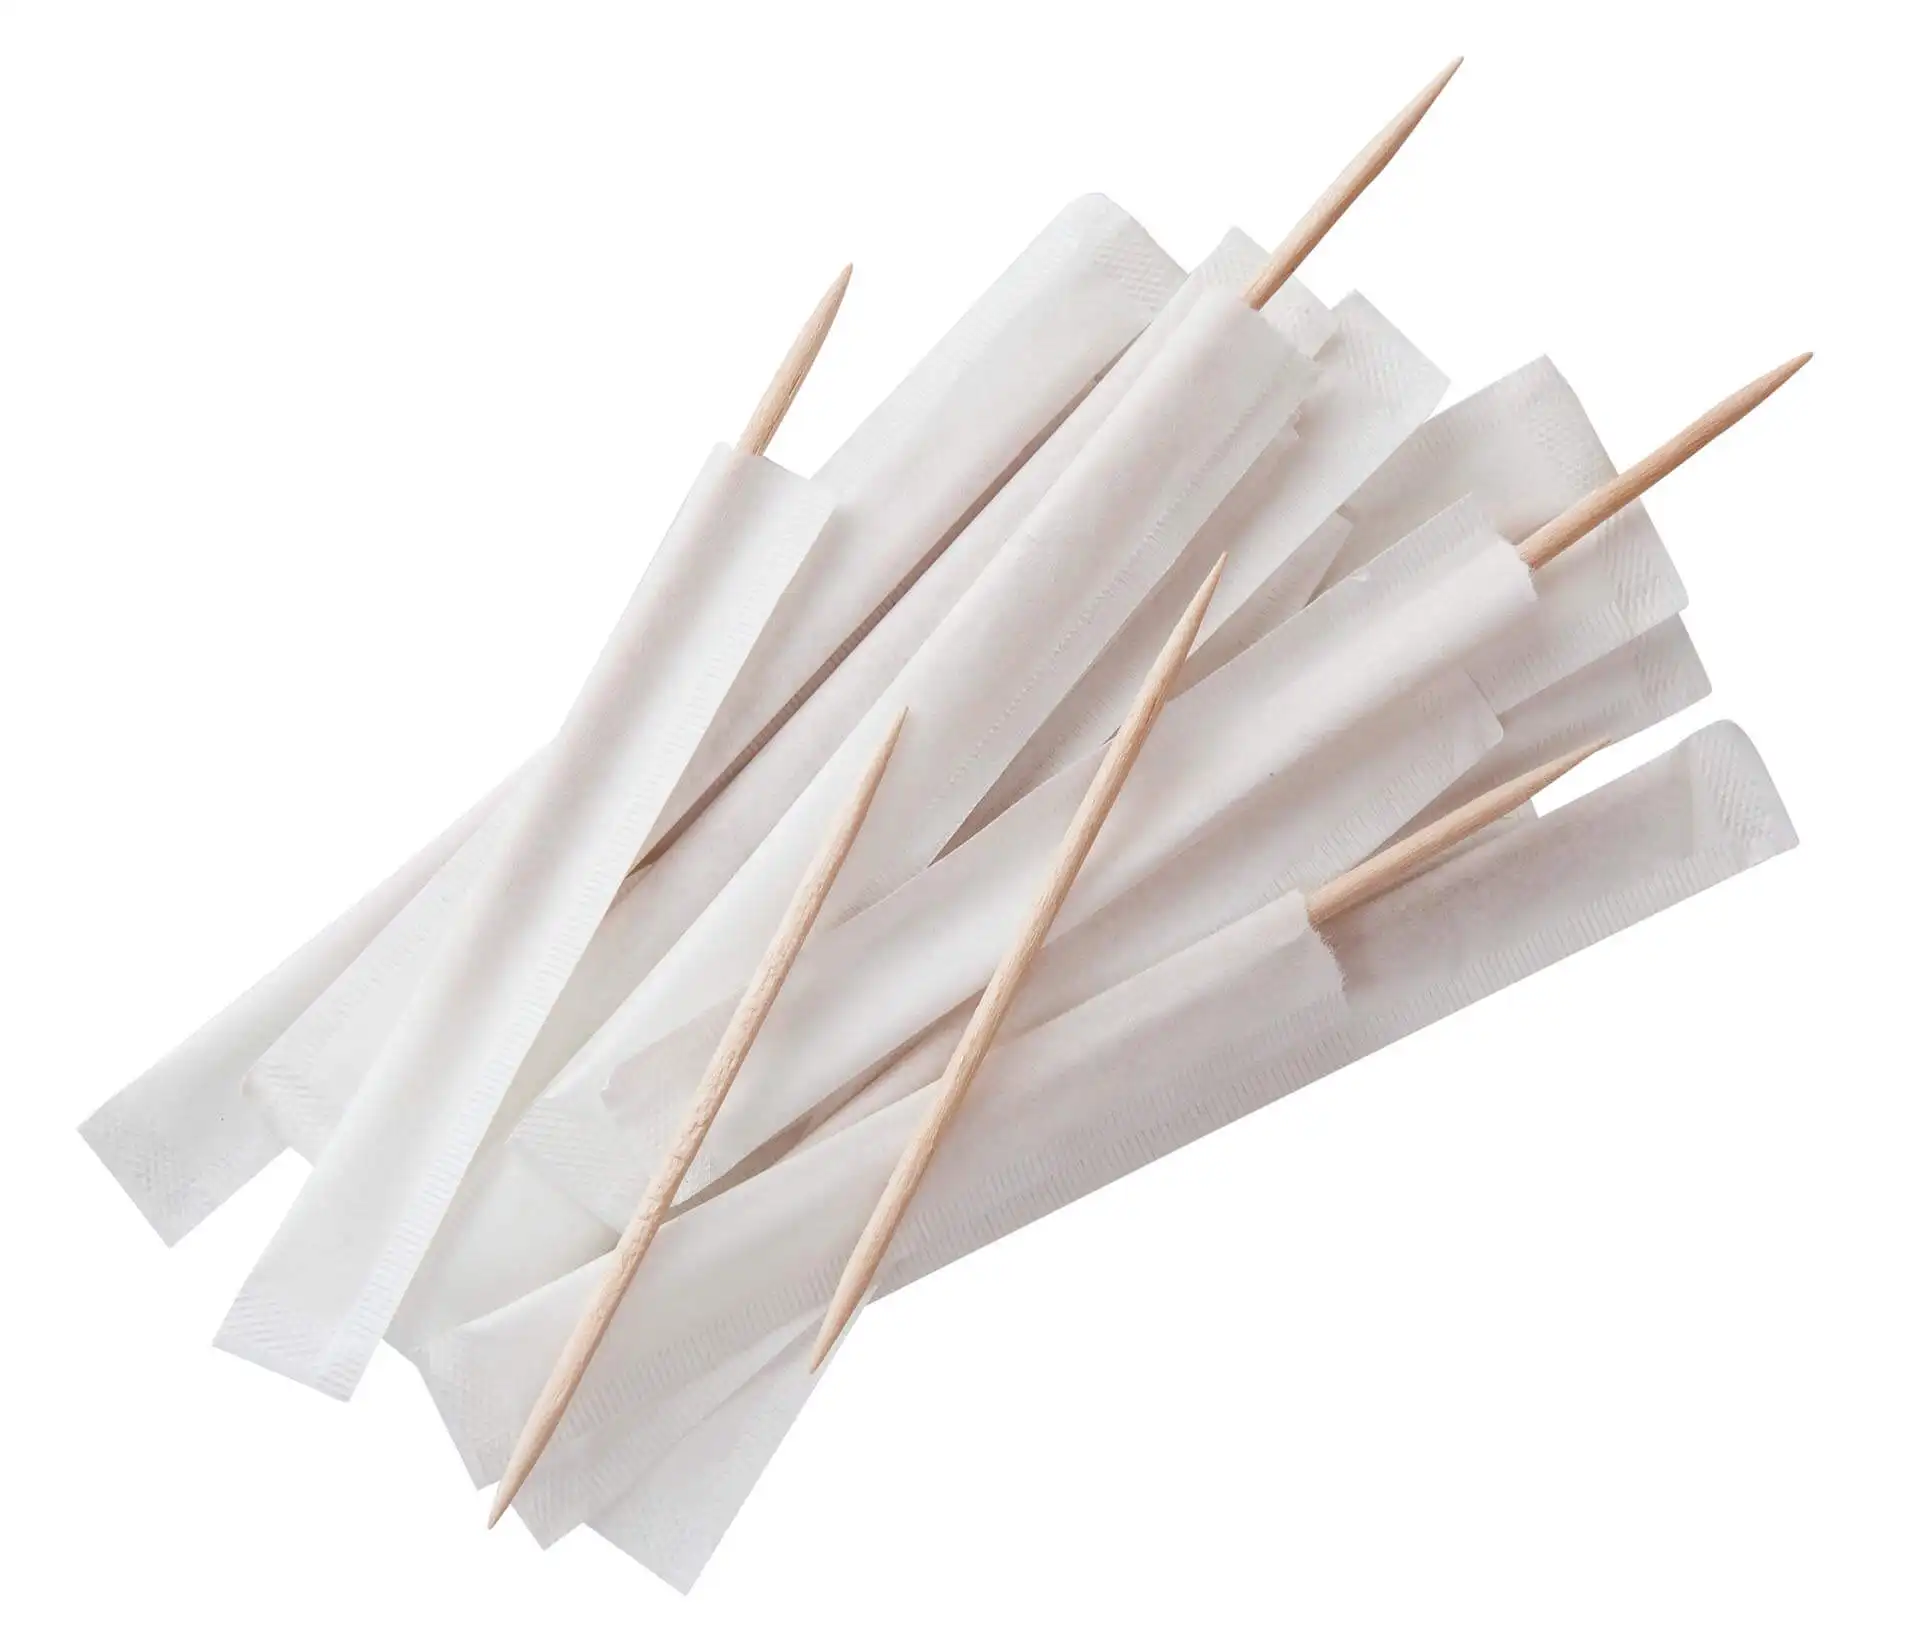 Palillos de dientes de envoltura de papel, palillos de dientes embalados individuales de bambú de diámetro 2,0mm, venta al por mayor